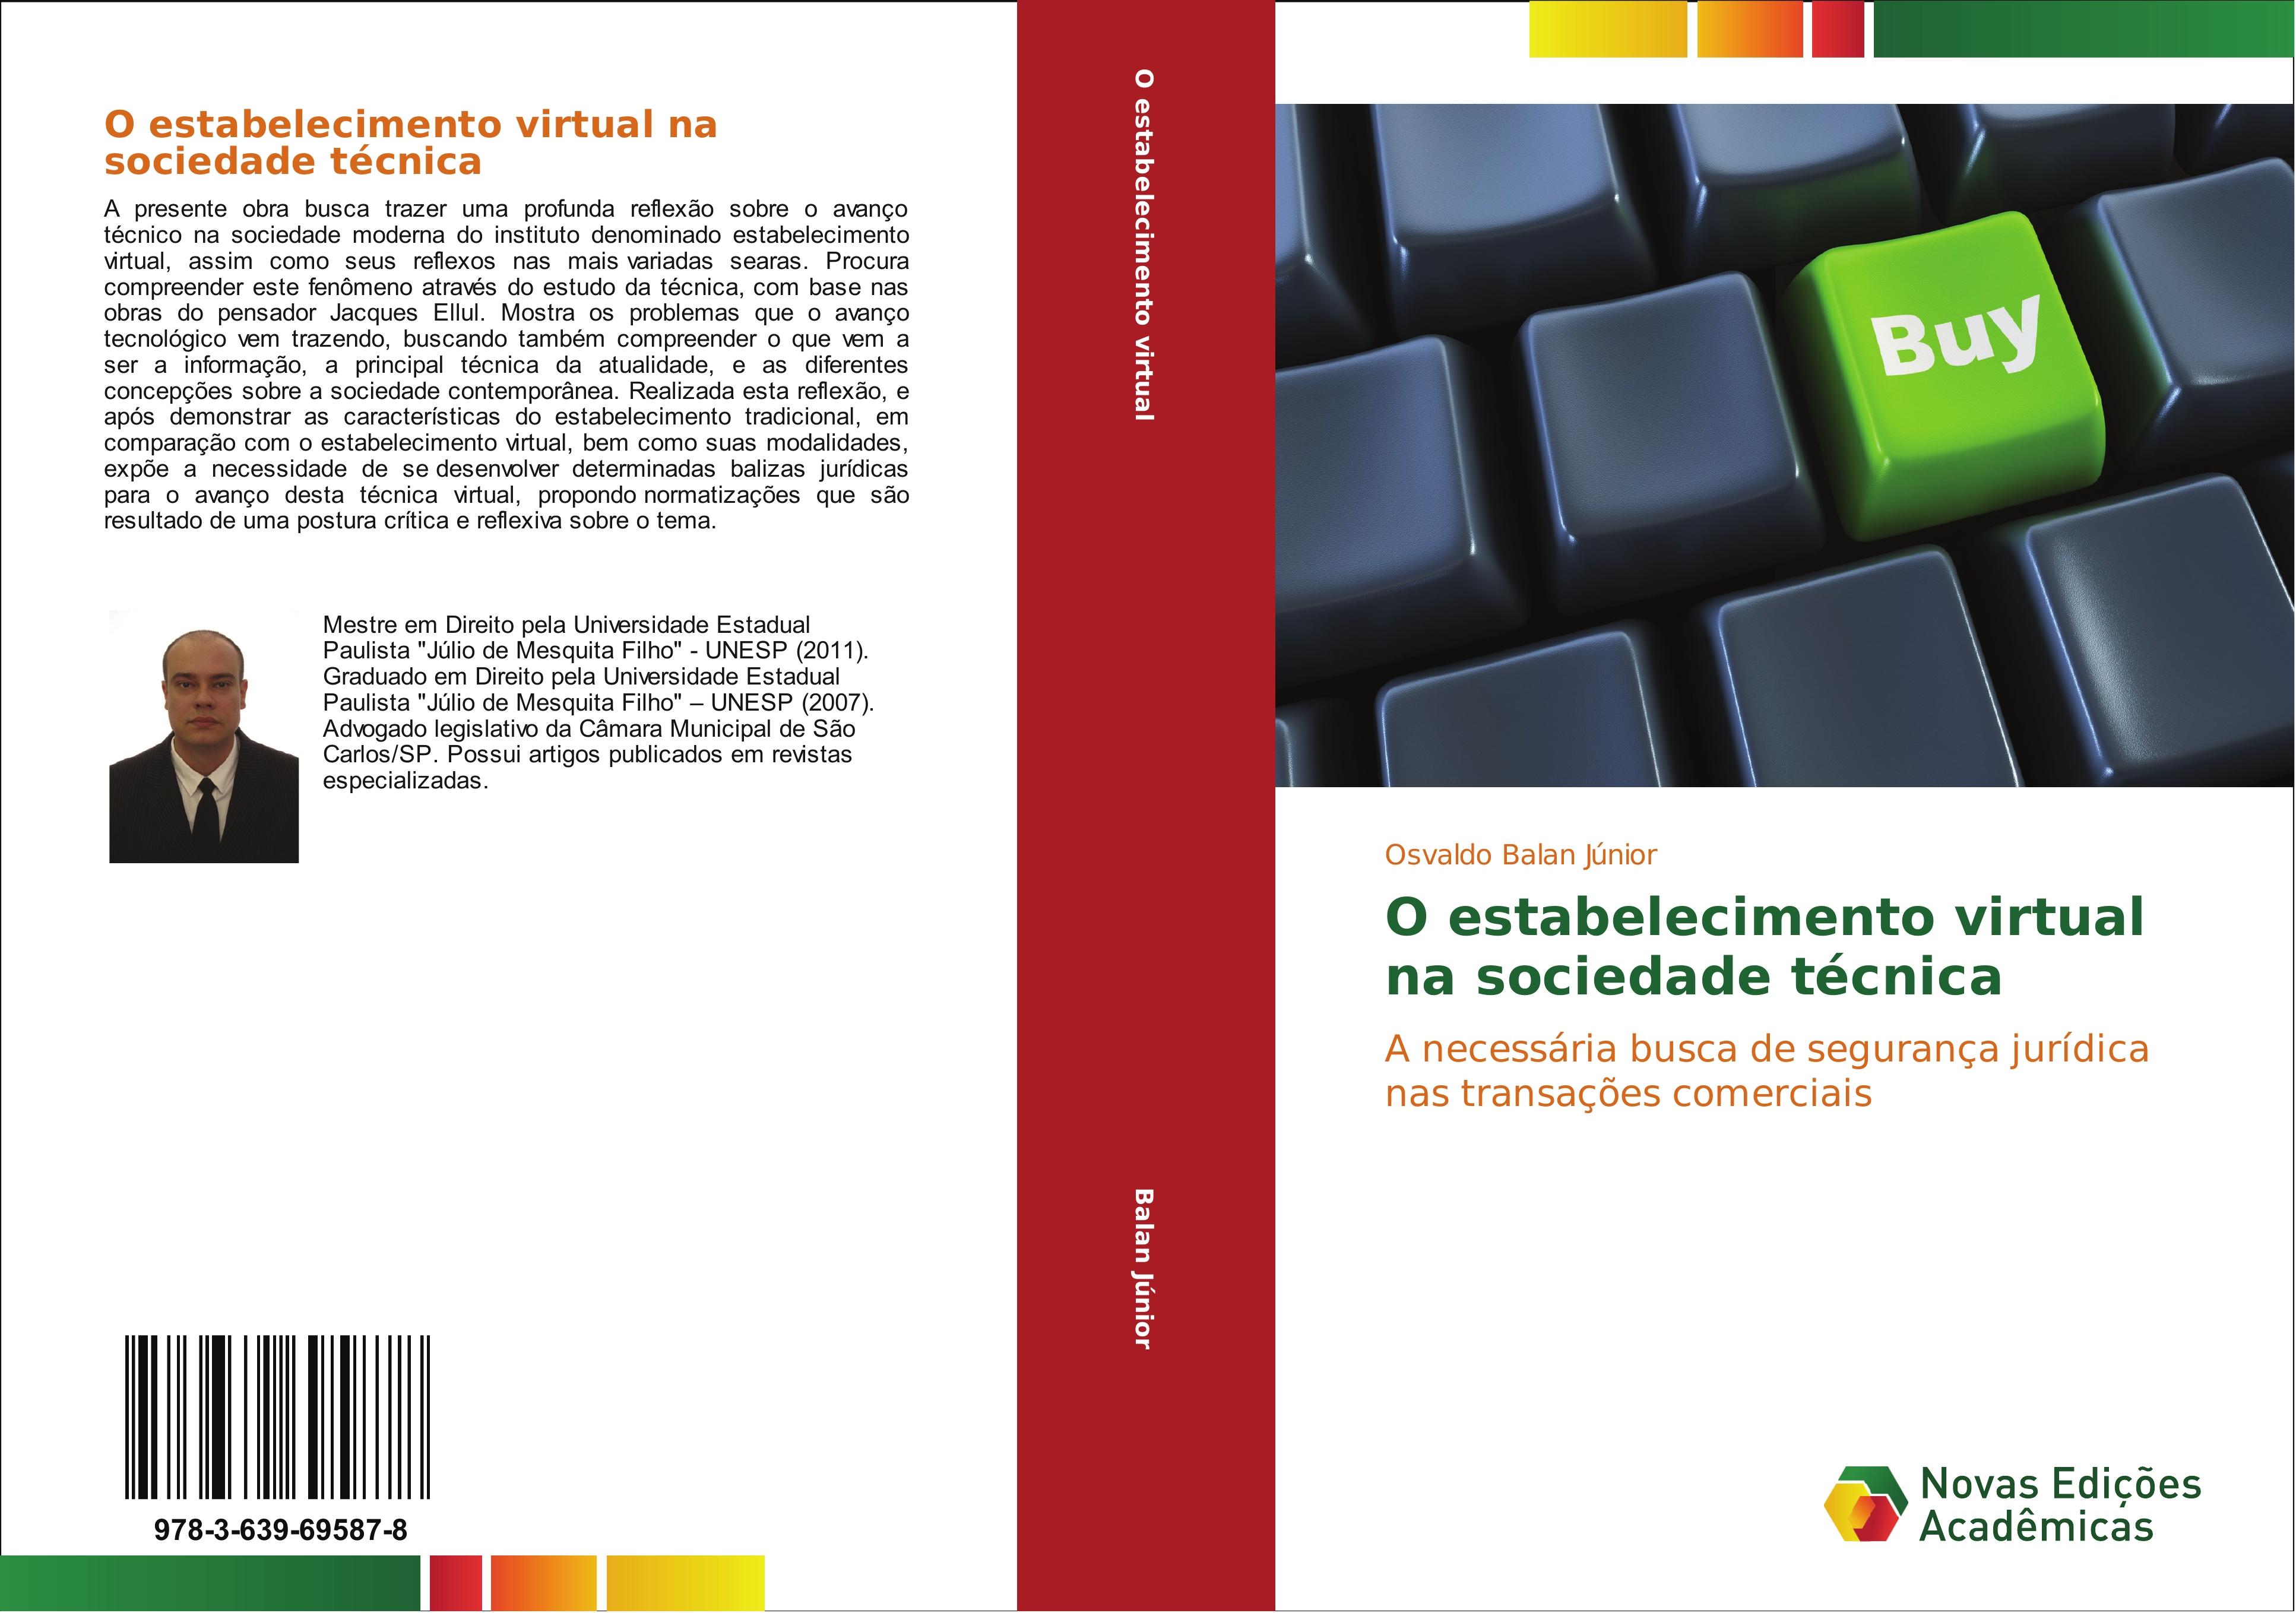 O estabelecimento virtual na sociedade técnica - Osvaldo Balan Júnior